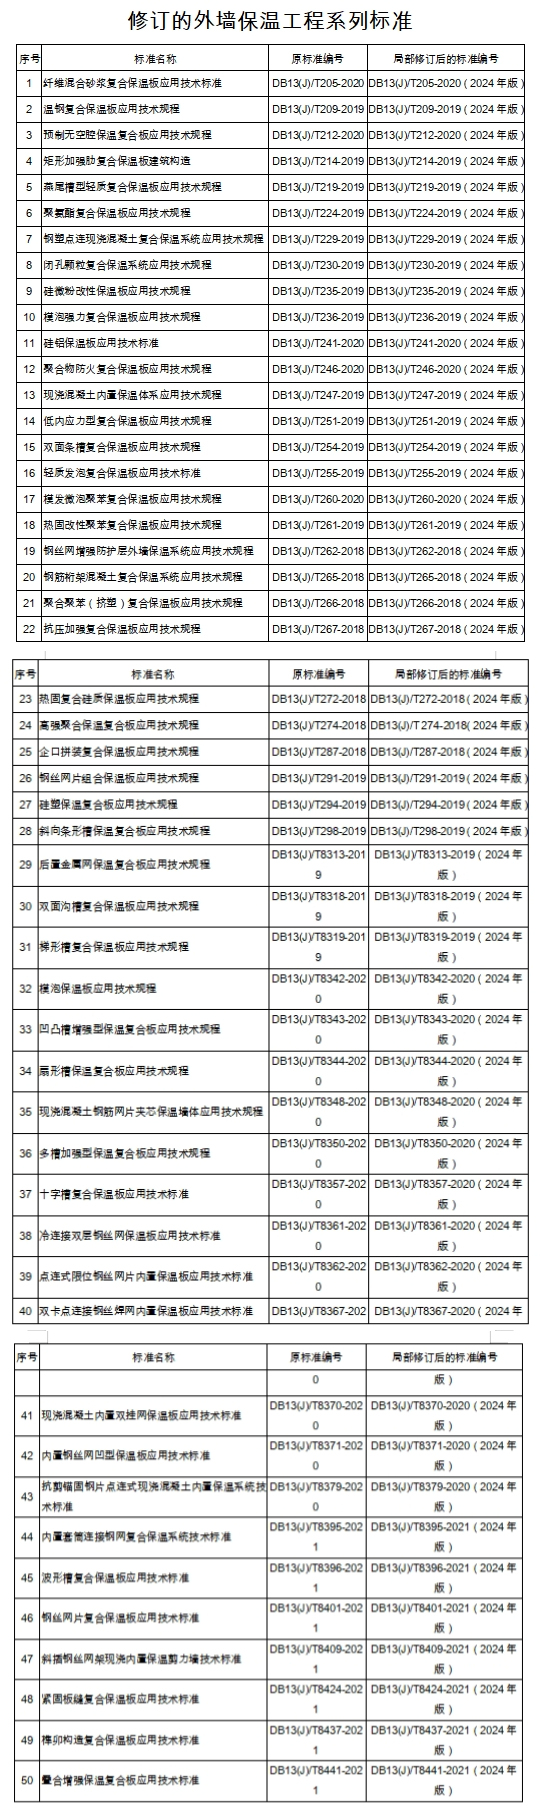 河北省关于发布外墙保温工程系列标准修订的公告